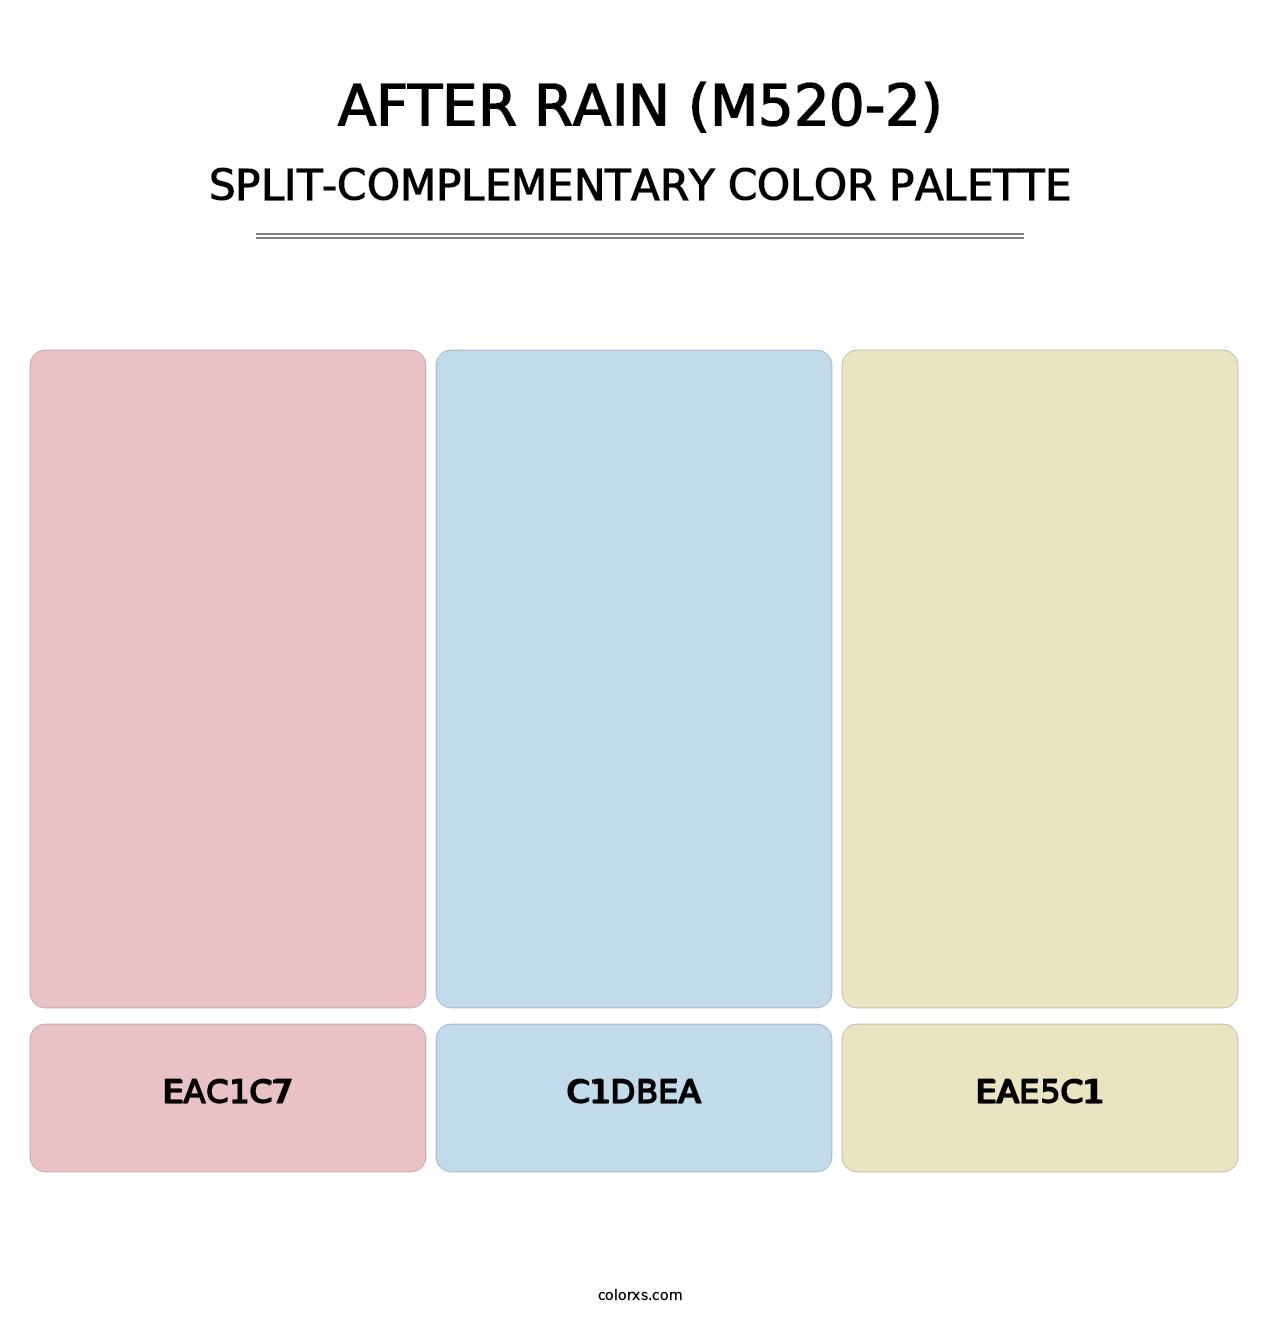 After Rain (M520-2) - Split-Complementary Color Palette